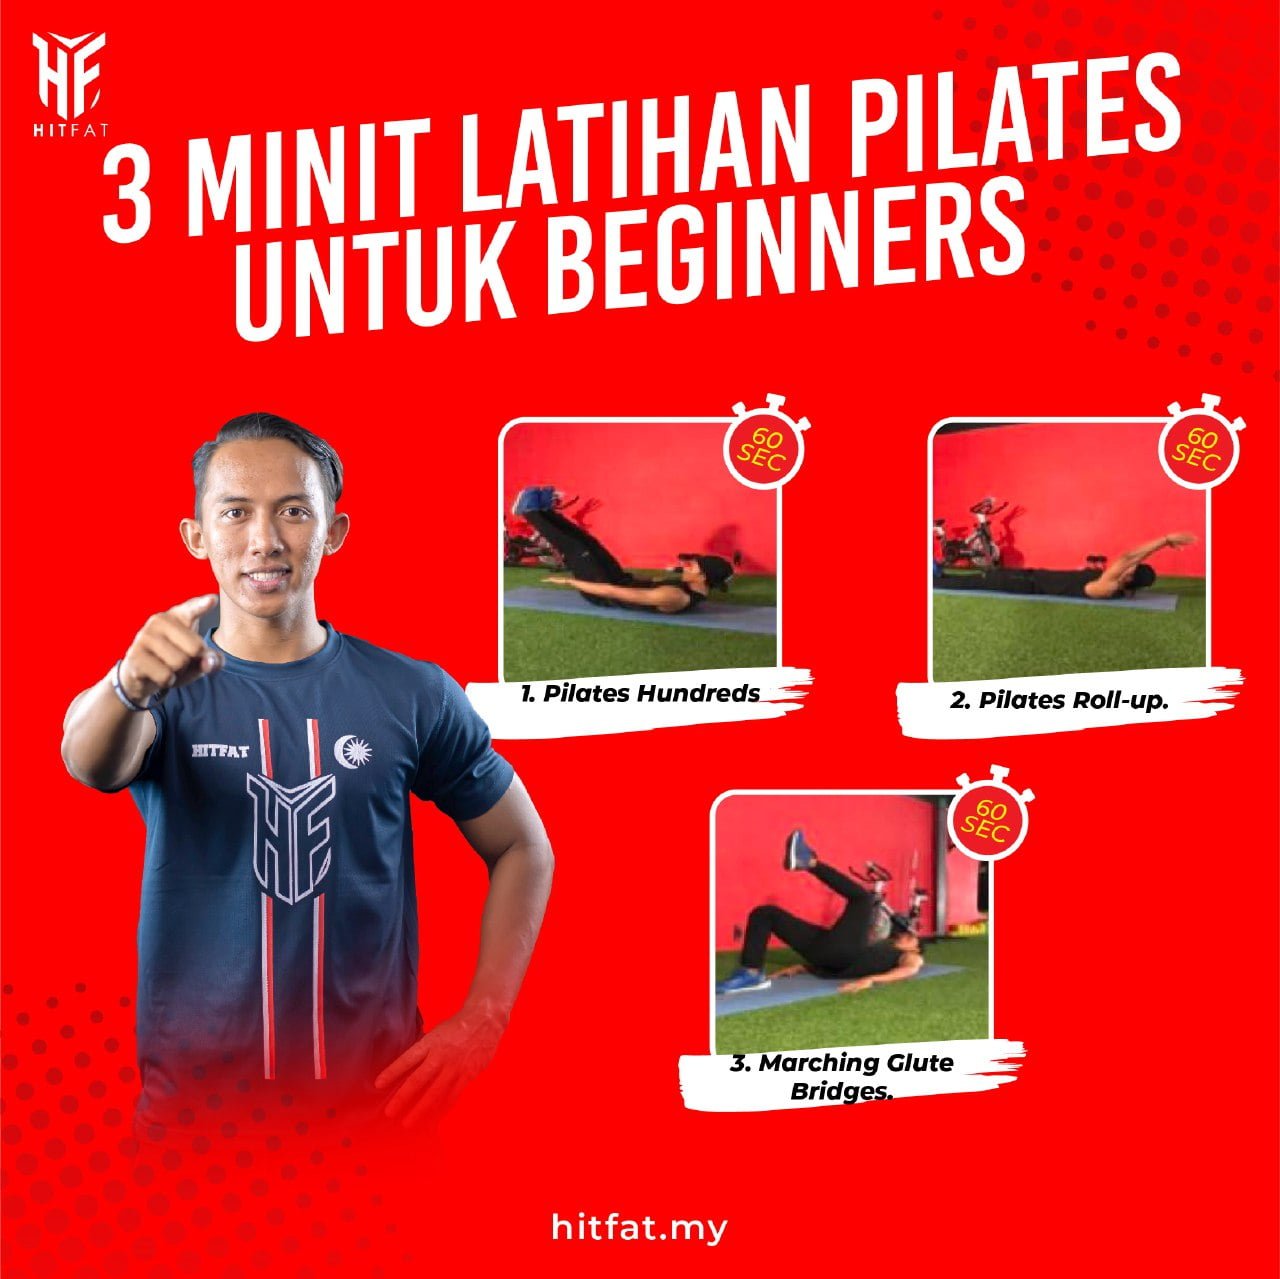 3 Minit Latihan Pilates Untuk Beginners